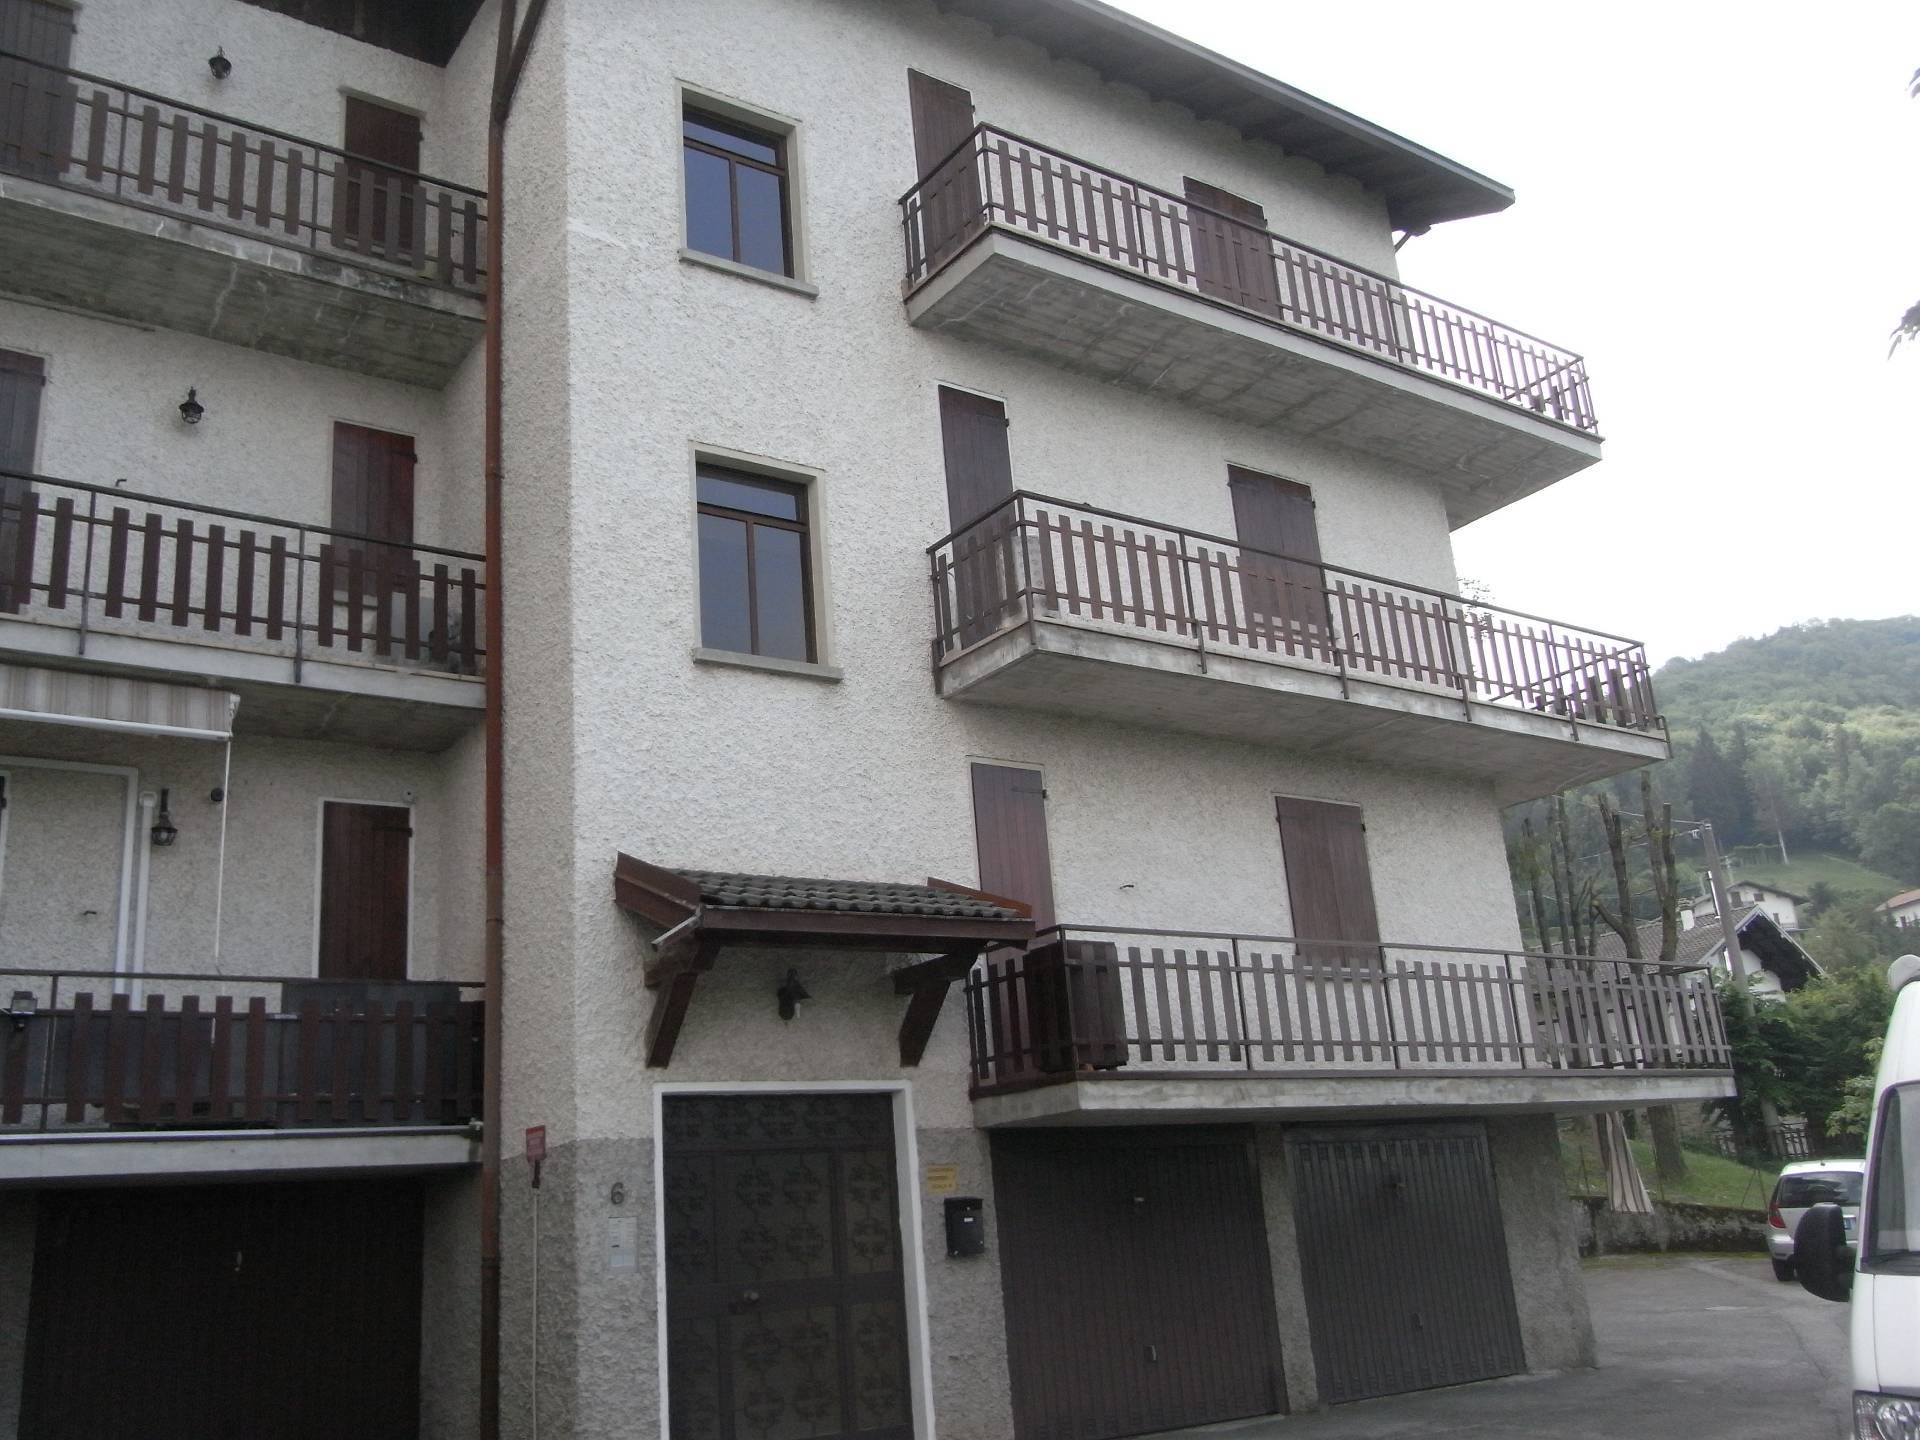 Appartamento in vendita a Zogno, 2 locali, zona Località: MiragoloSanSalvatore, prezzo € 19.000 | PortaleAgenzieImmobiliari.it